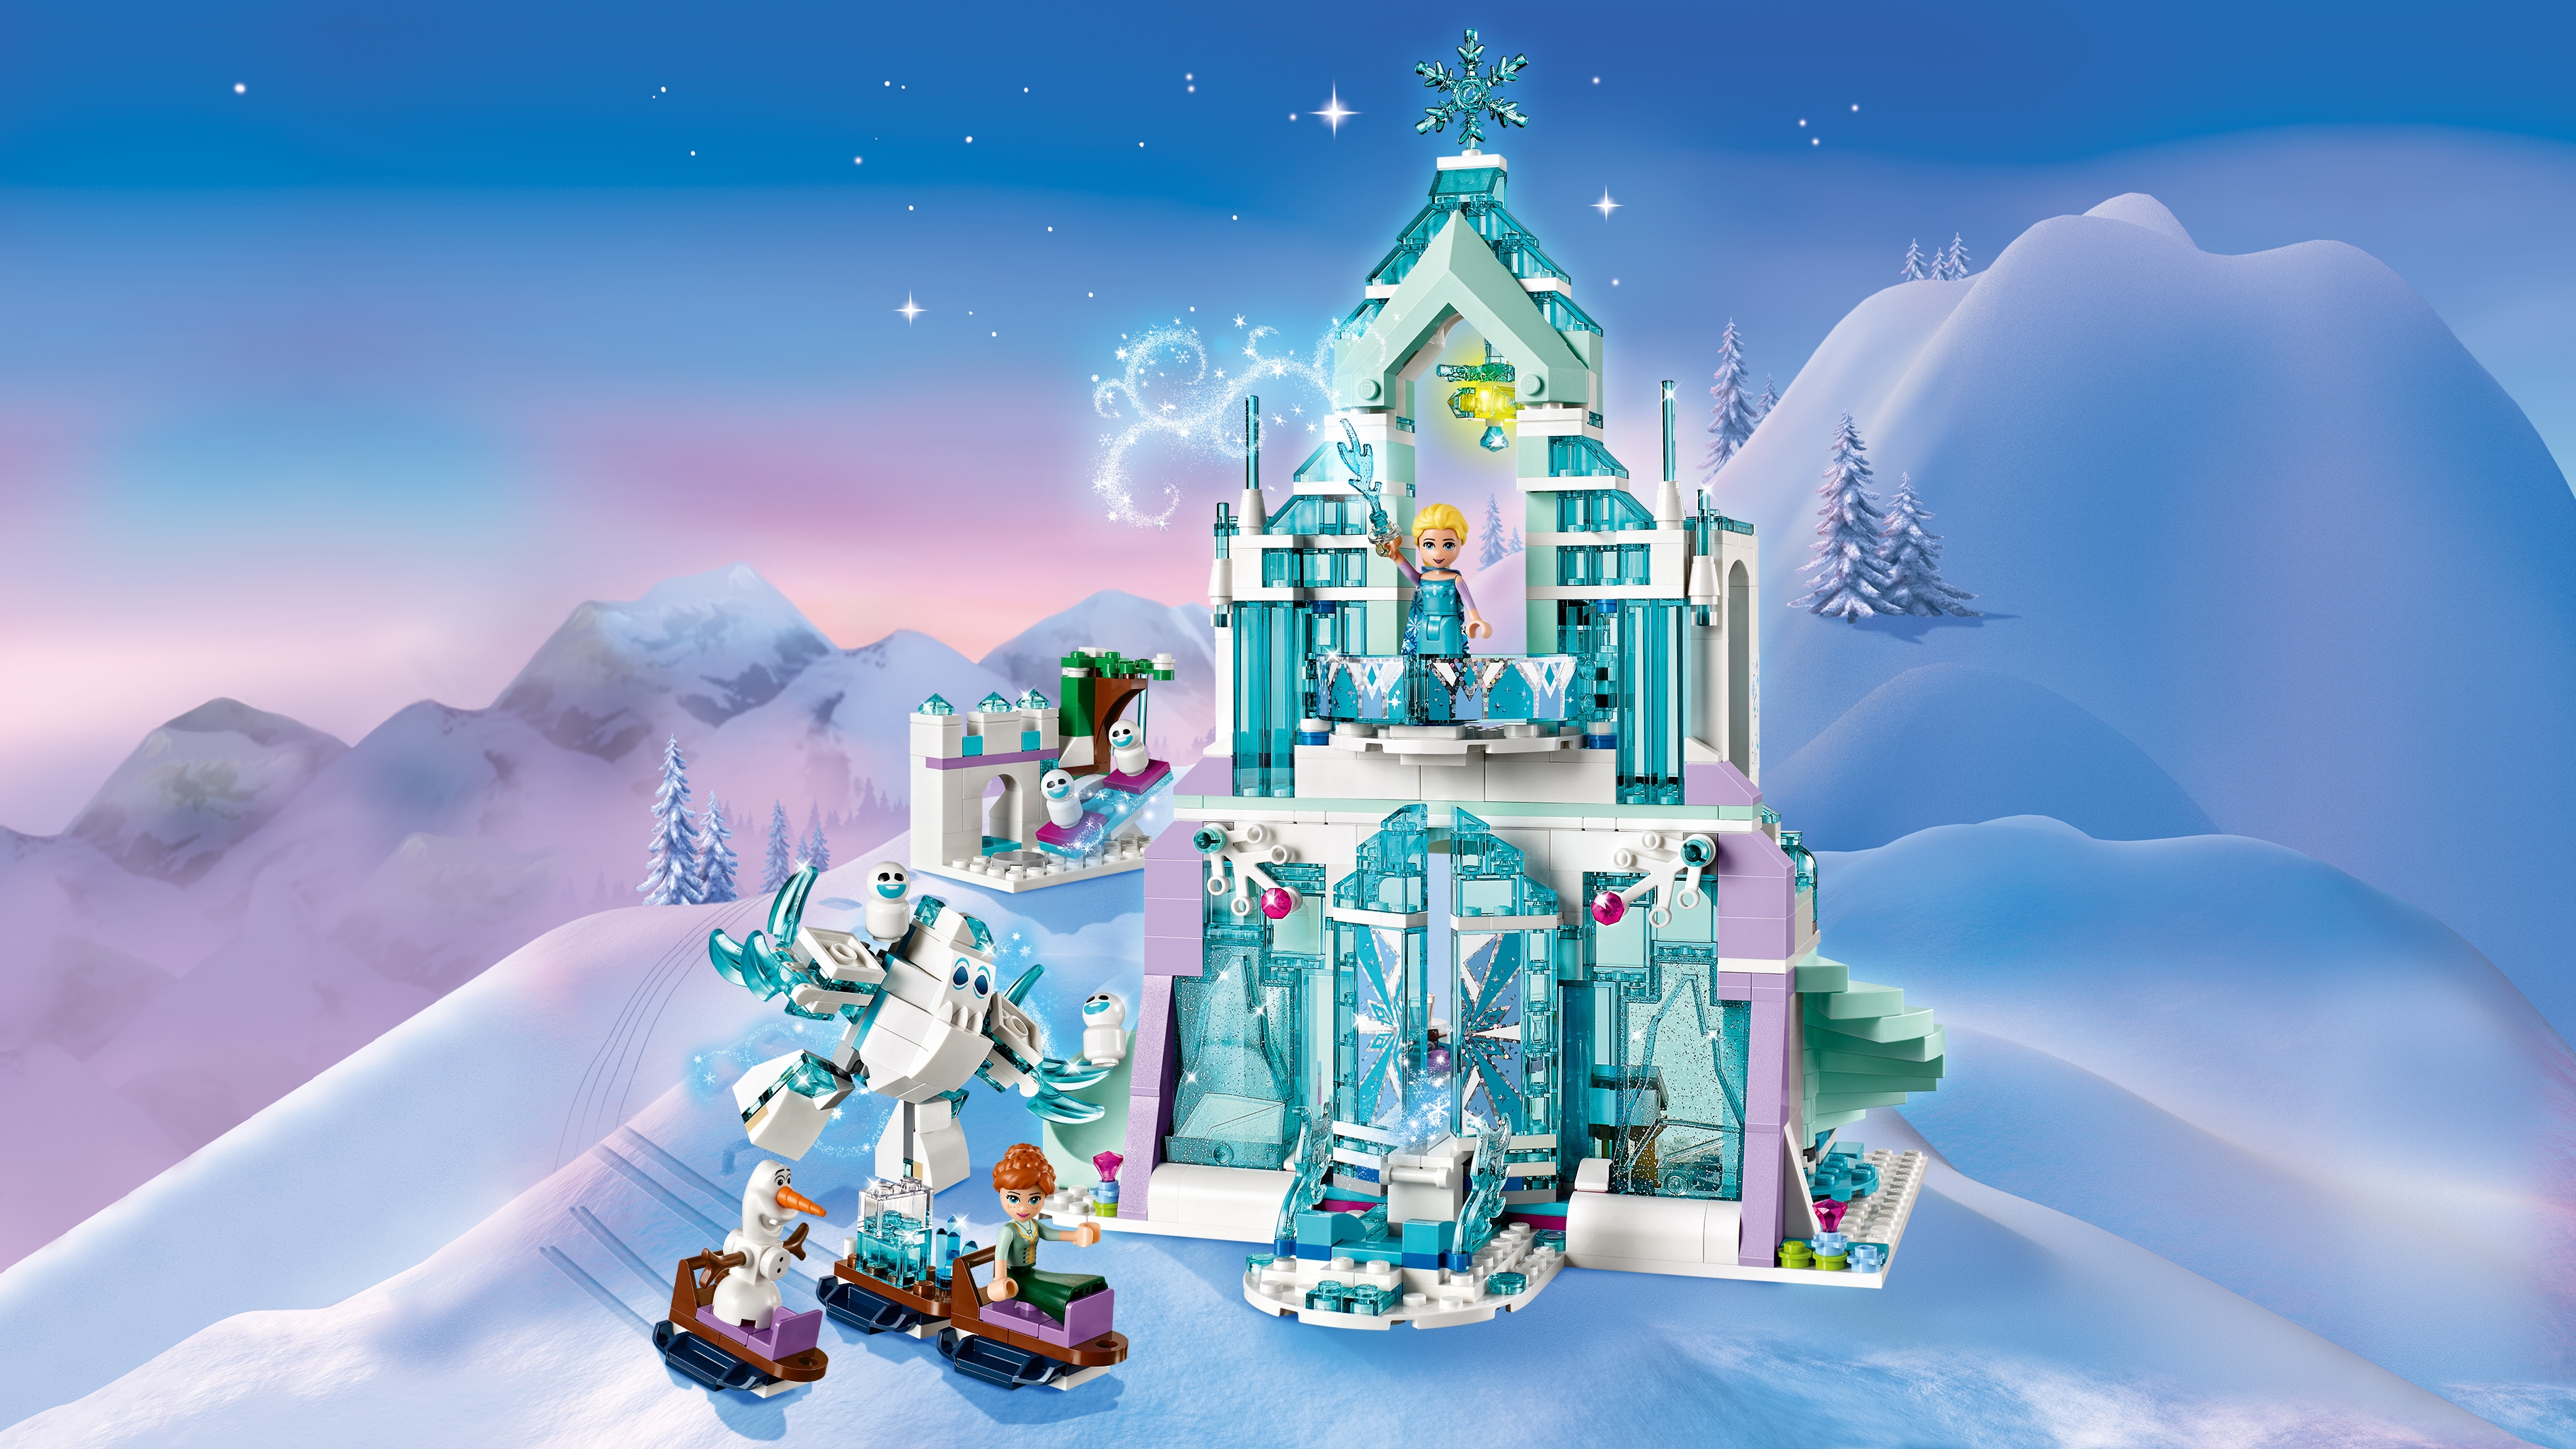 Lego Disney Frozen Princess Il Castello di Ghiaccio di Elsa